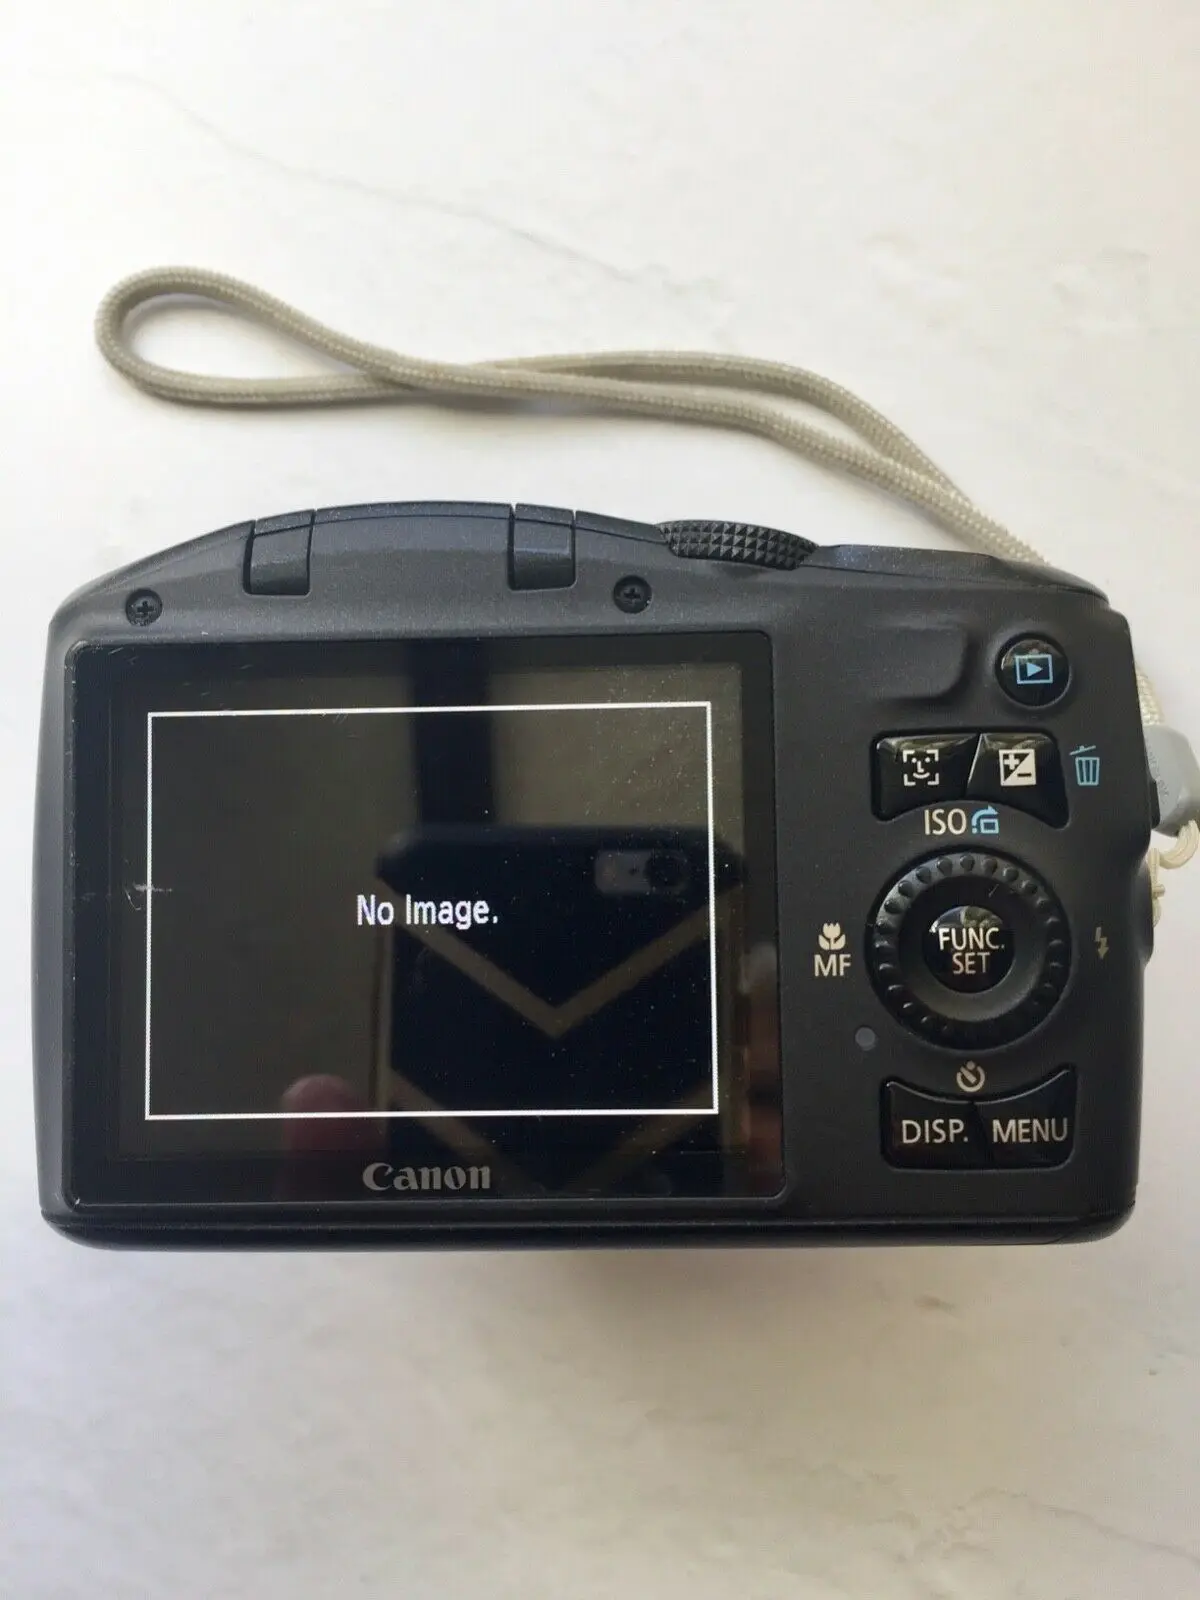 Б/у цифровая камера CANON POWERSHOT SX130 IS 12.1MP цифровой 12x оптический зум+ карта памяти 8 Гб полностью протестирована